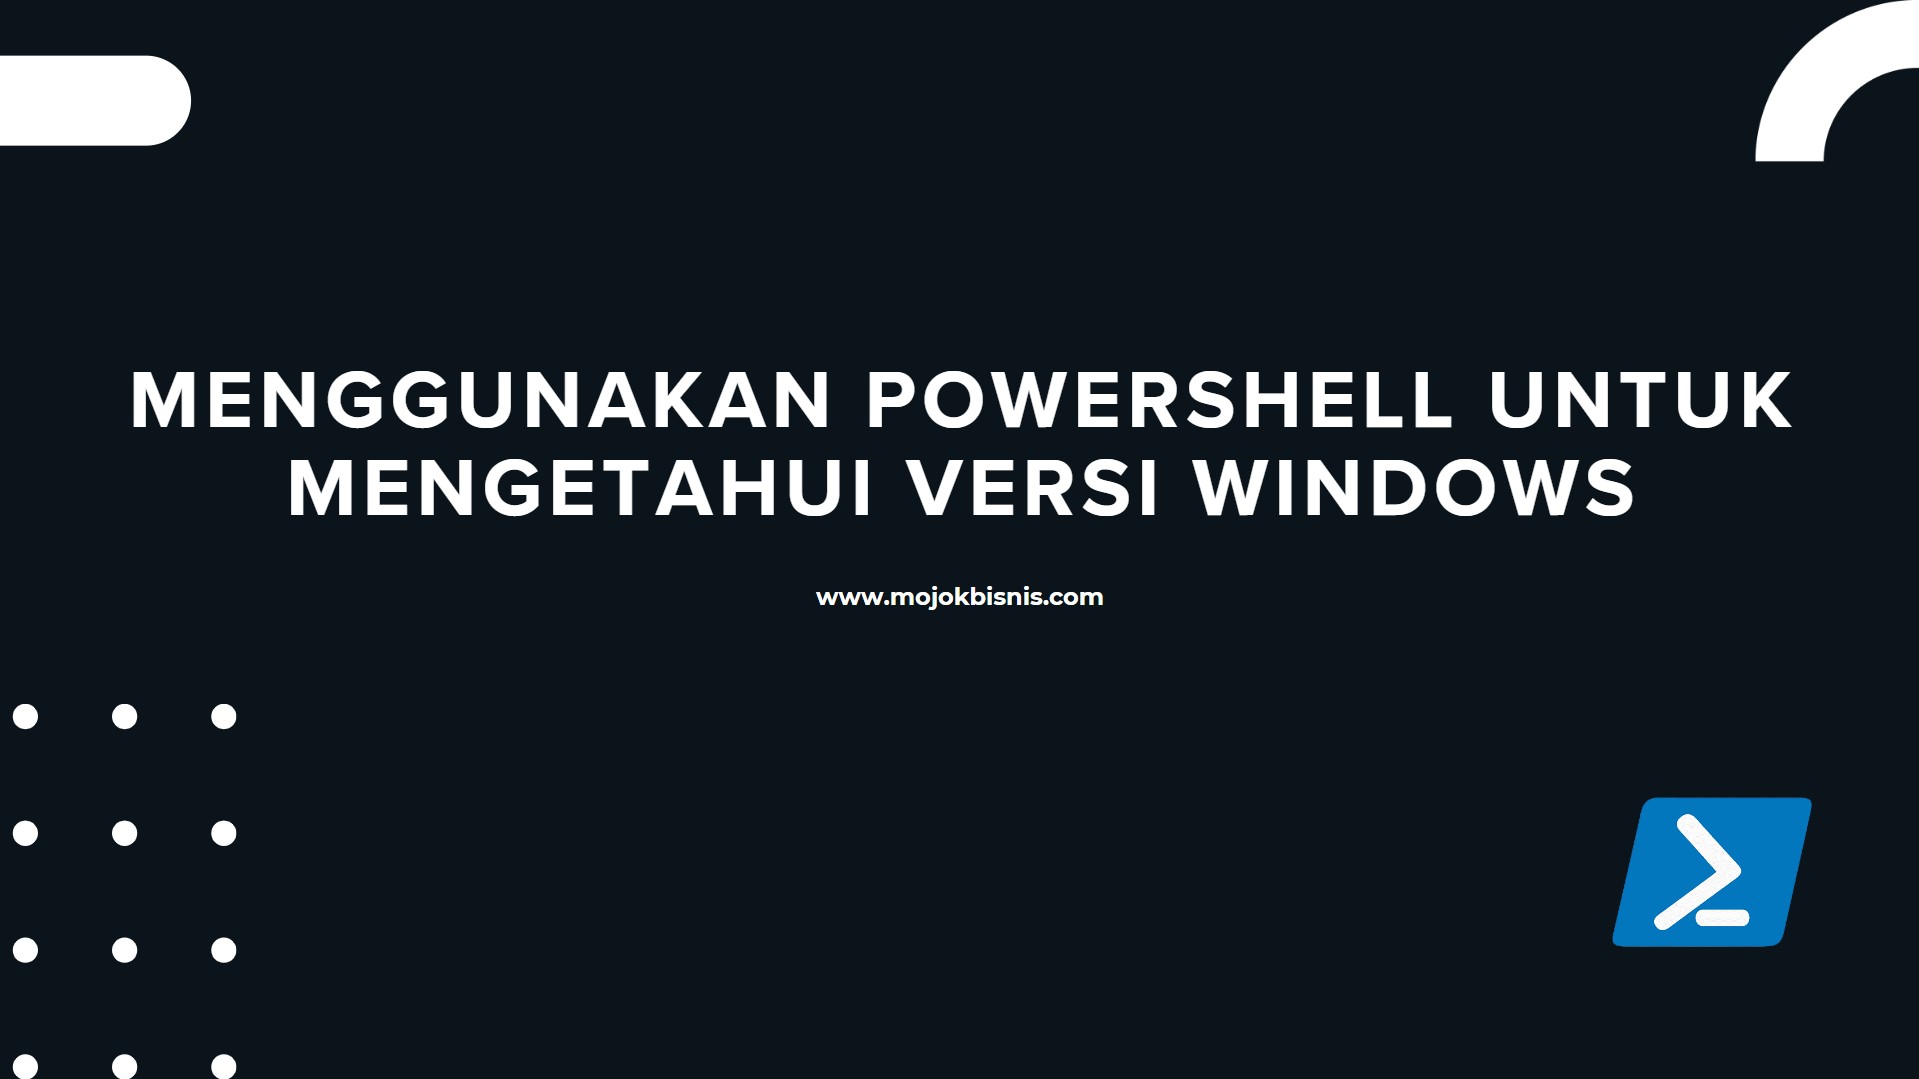 4. Menggunakan PowerShell Untuk Mengetahui Versi Windows